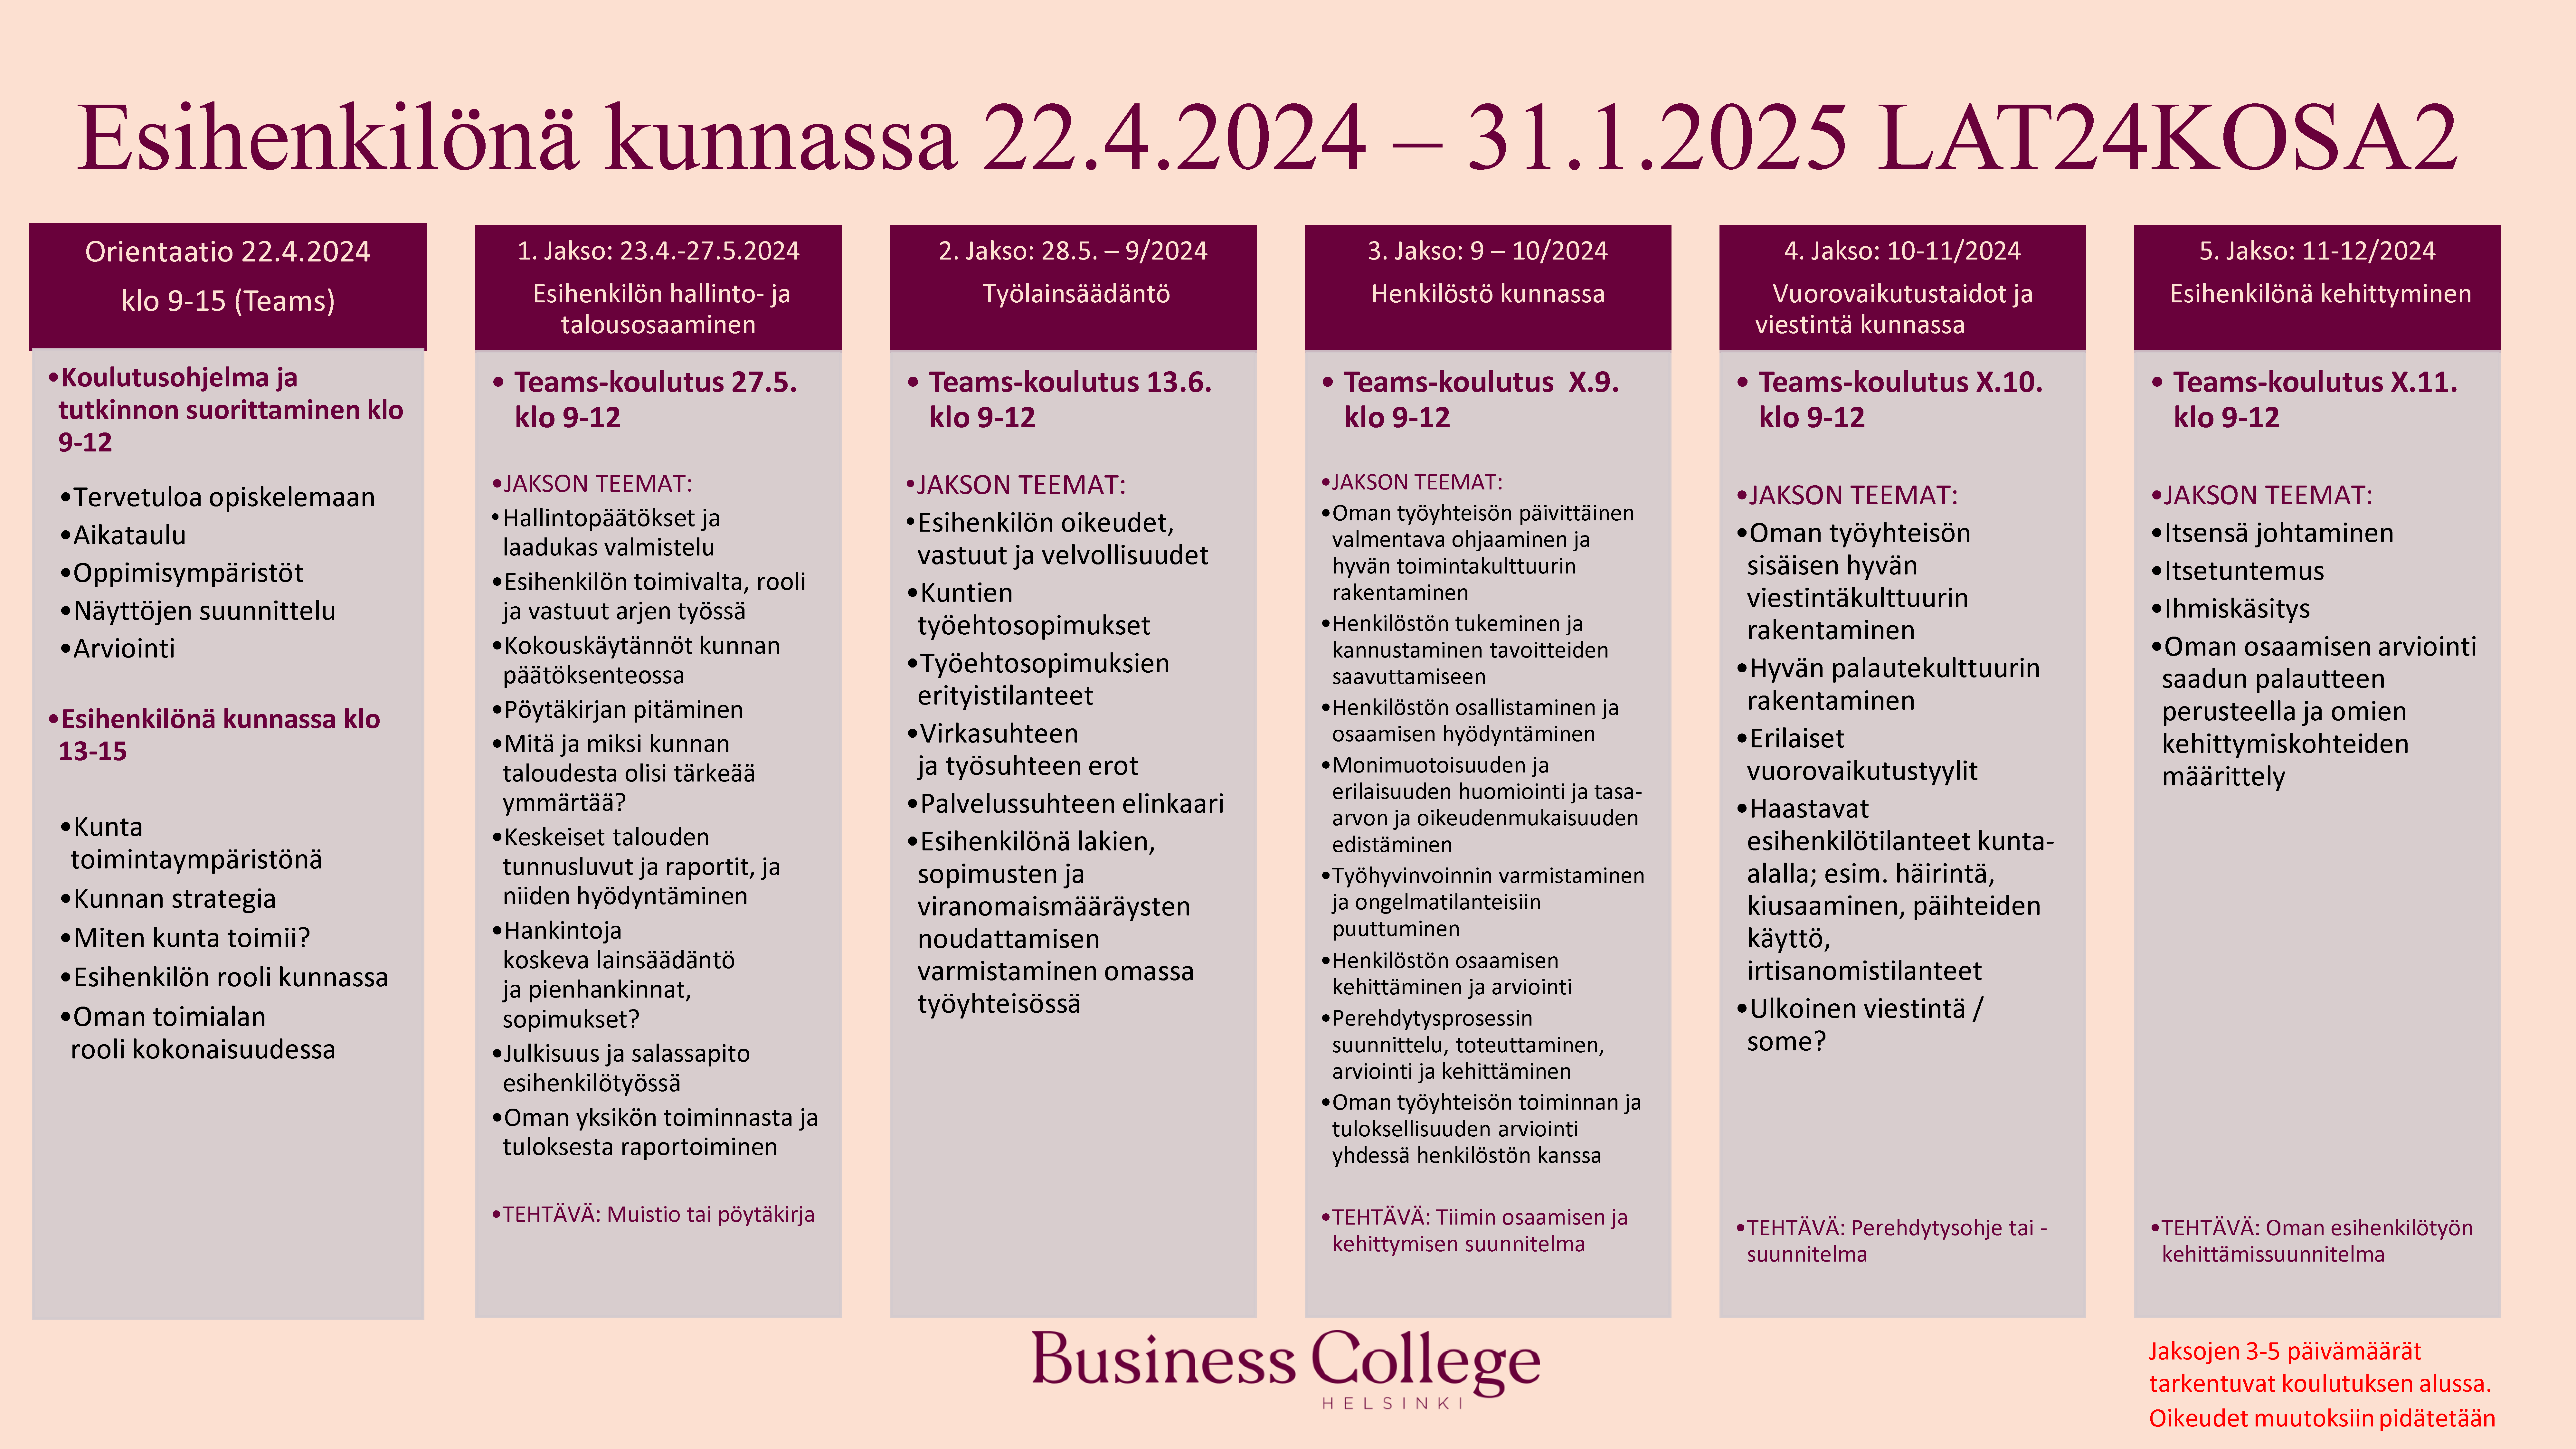 Business College - Esihenkilönä kunnassa -koulutus